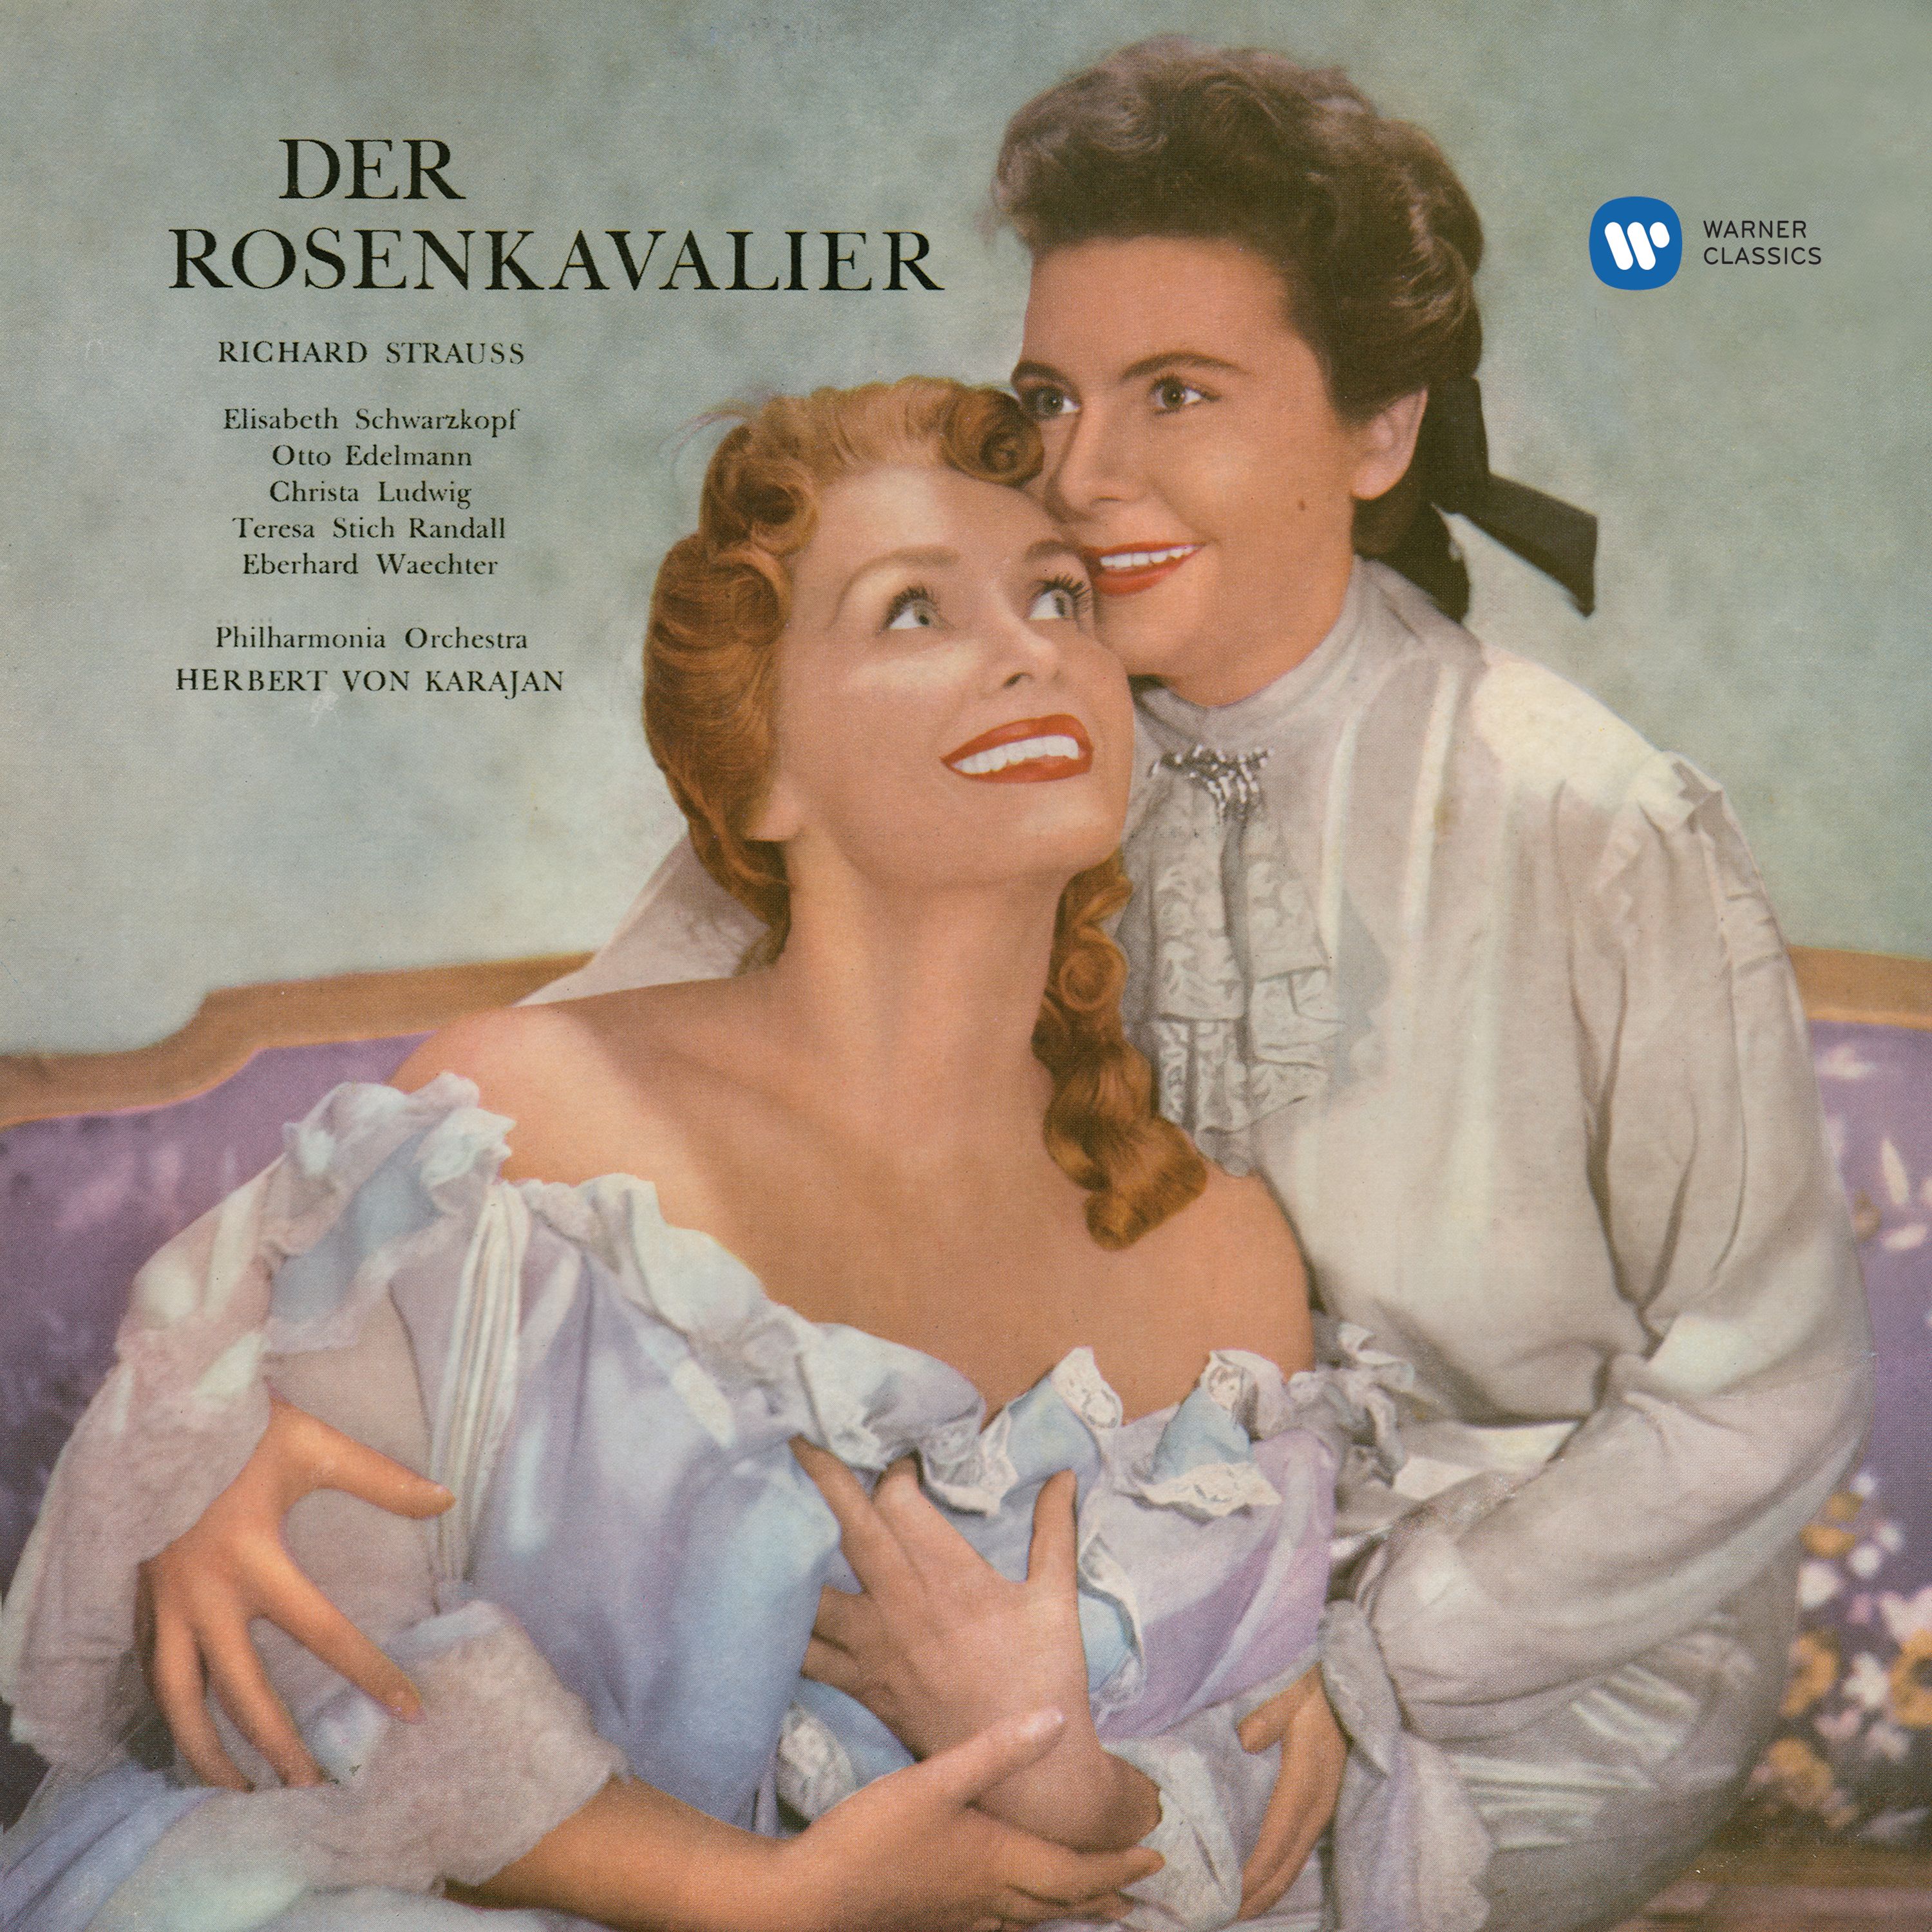 Der Rosenkavalier, Op. 59, Act 1: "Mein schöner Schatz" (Octavian, Marschallin)